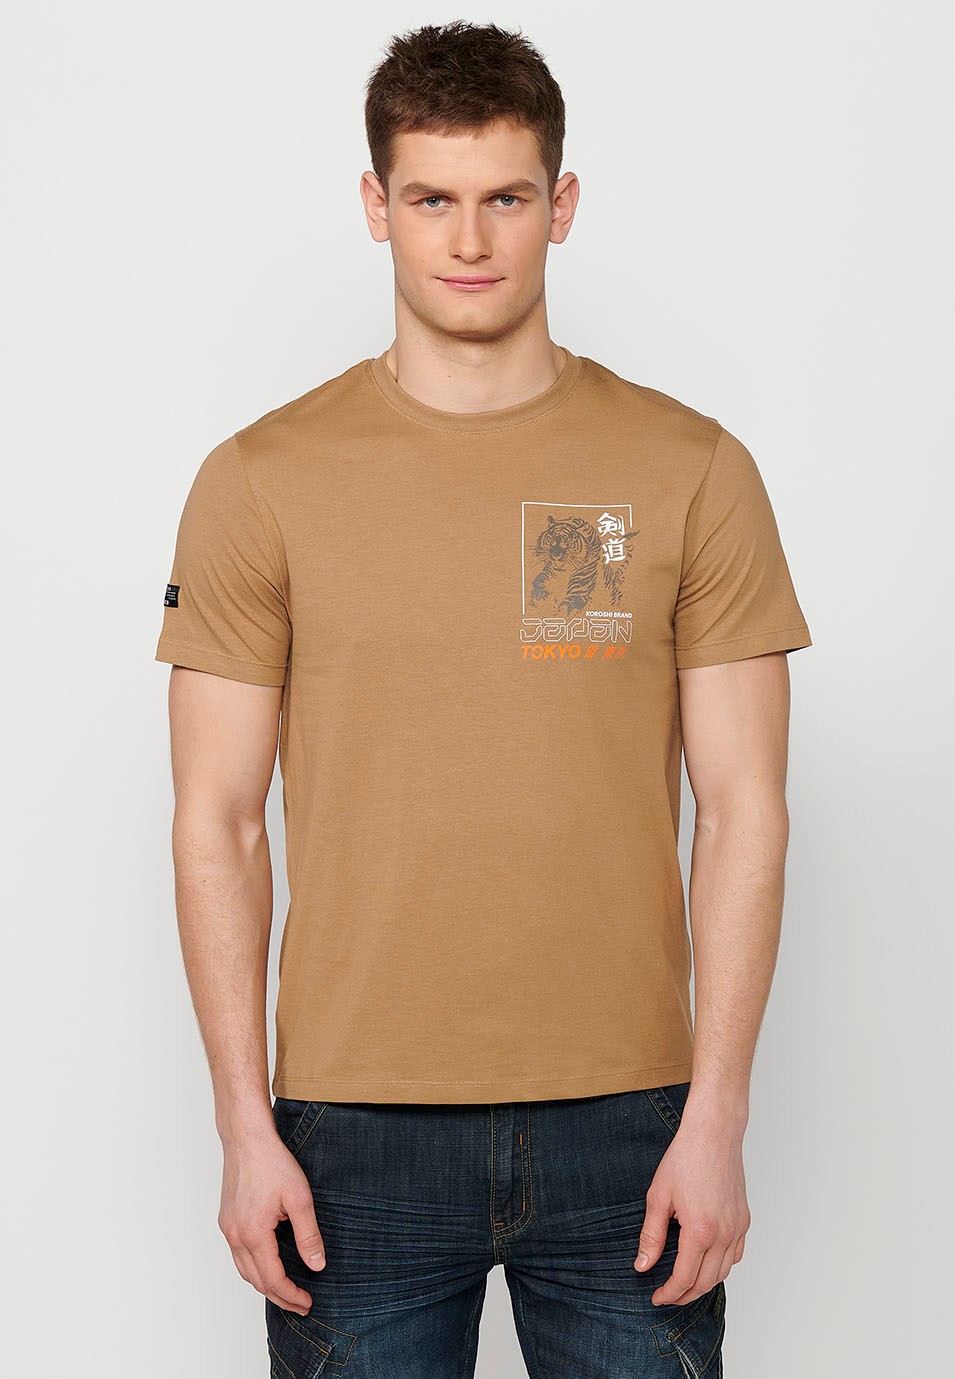 Camiseta de manga corta de algodon y estampado trasero jungle tigger, color camel para hombre